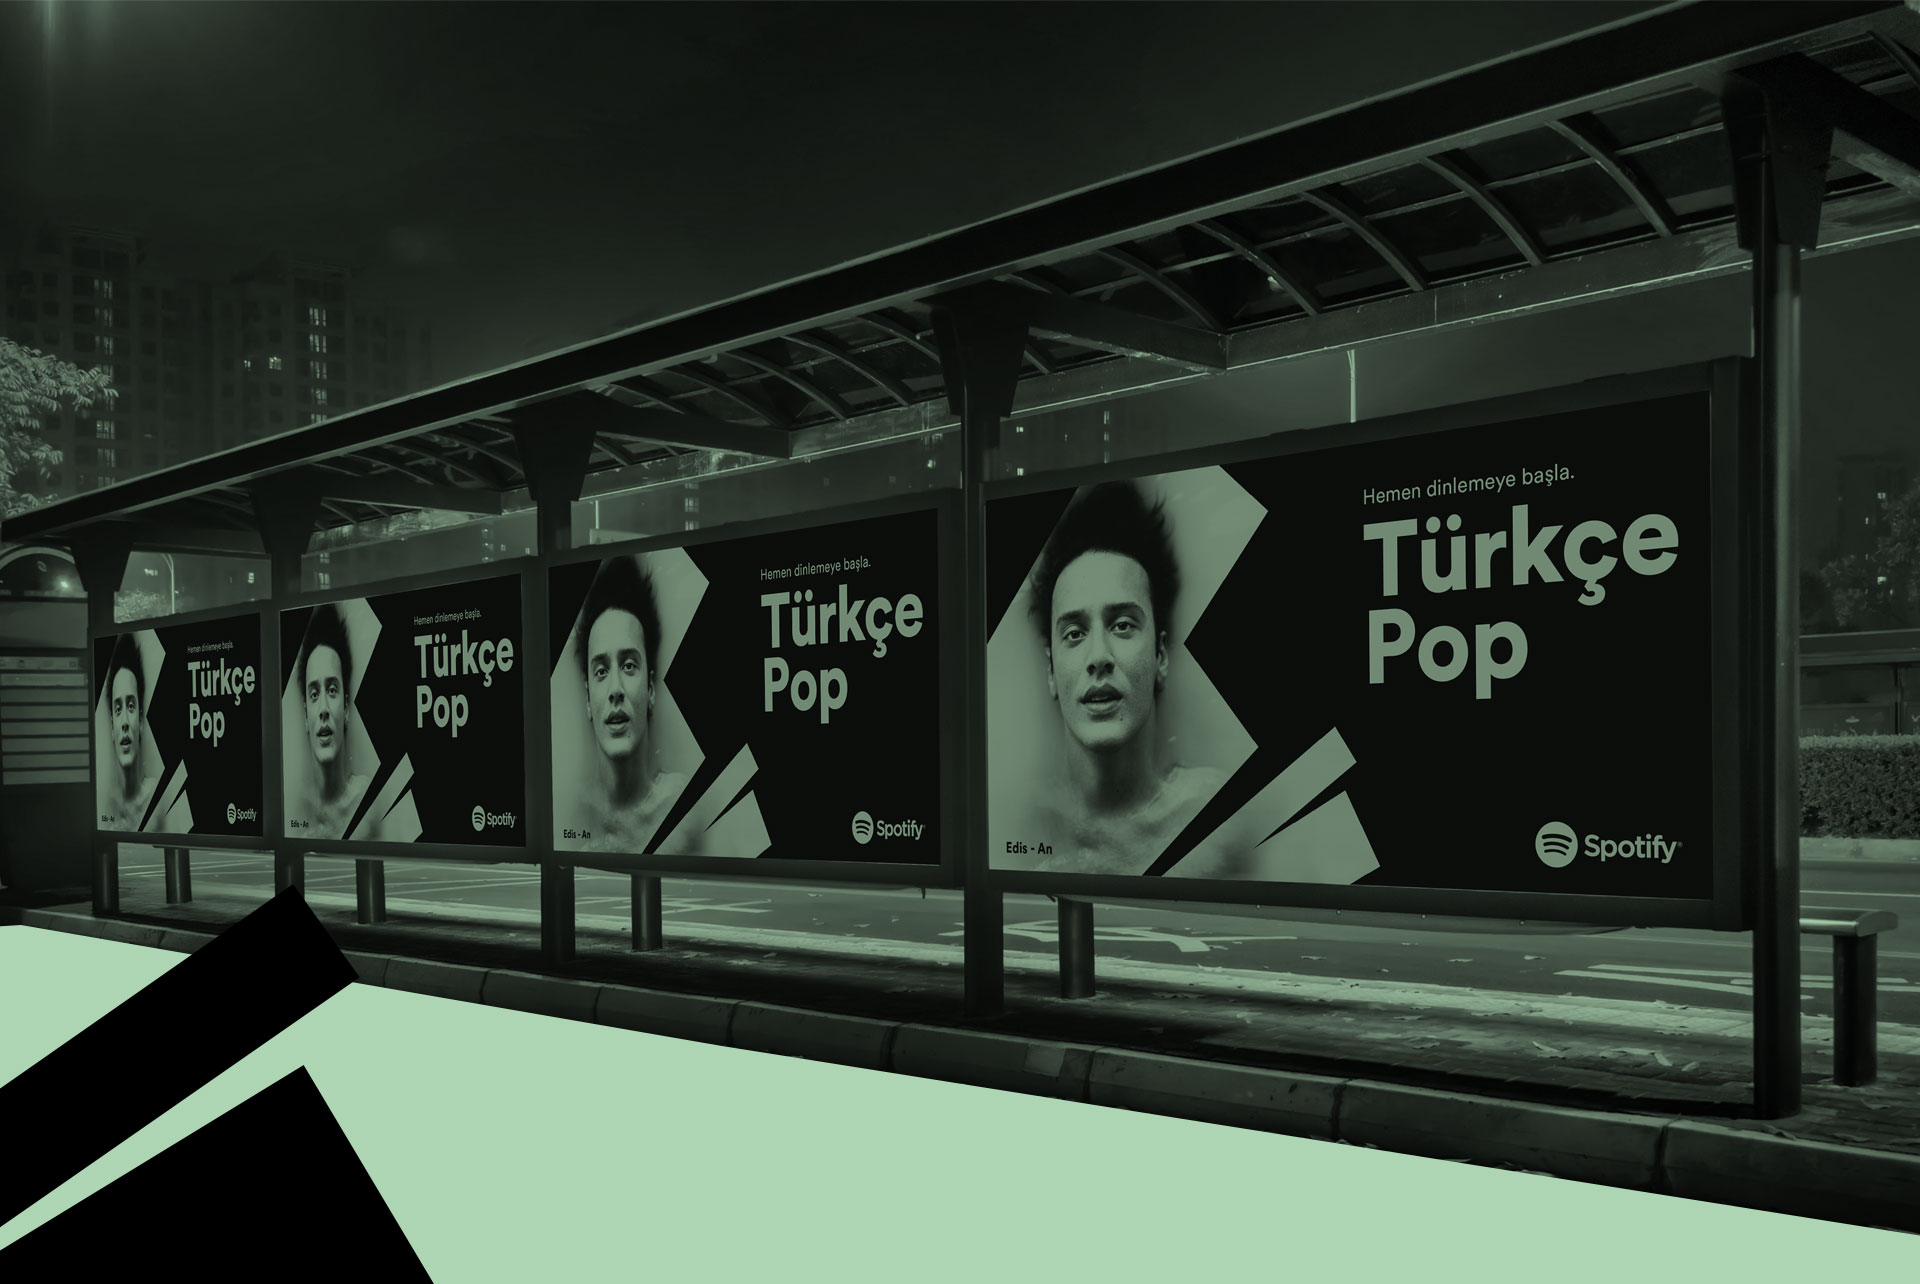 11_Spotify_Turkce_Pop_Sunum_02